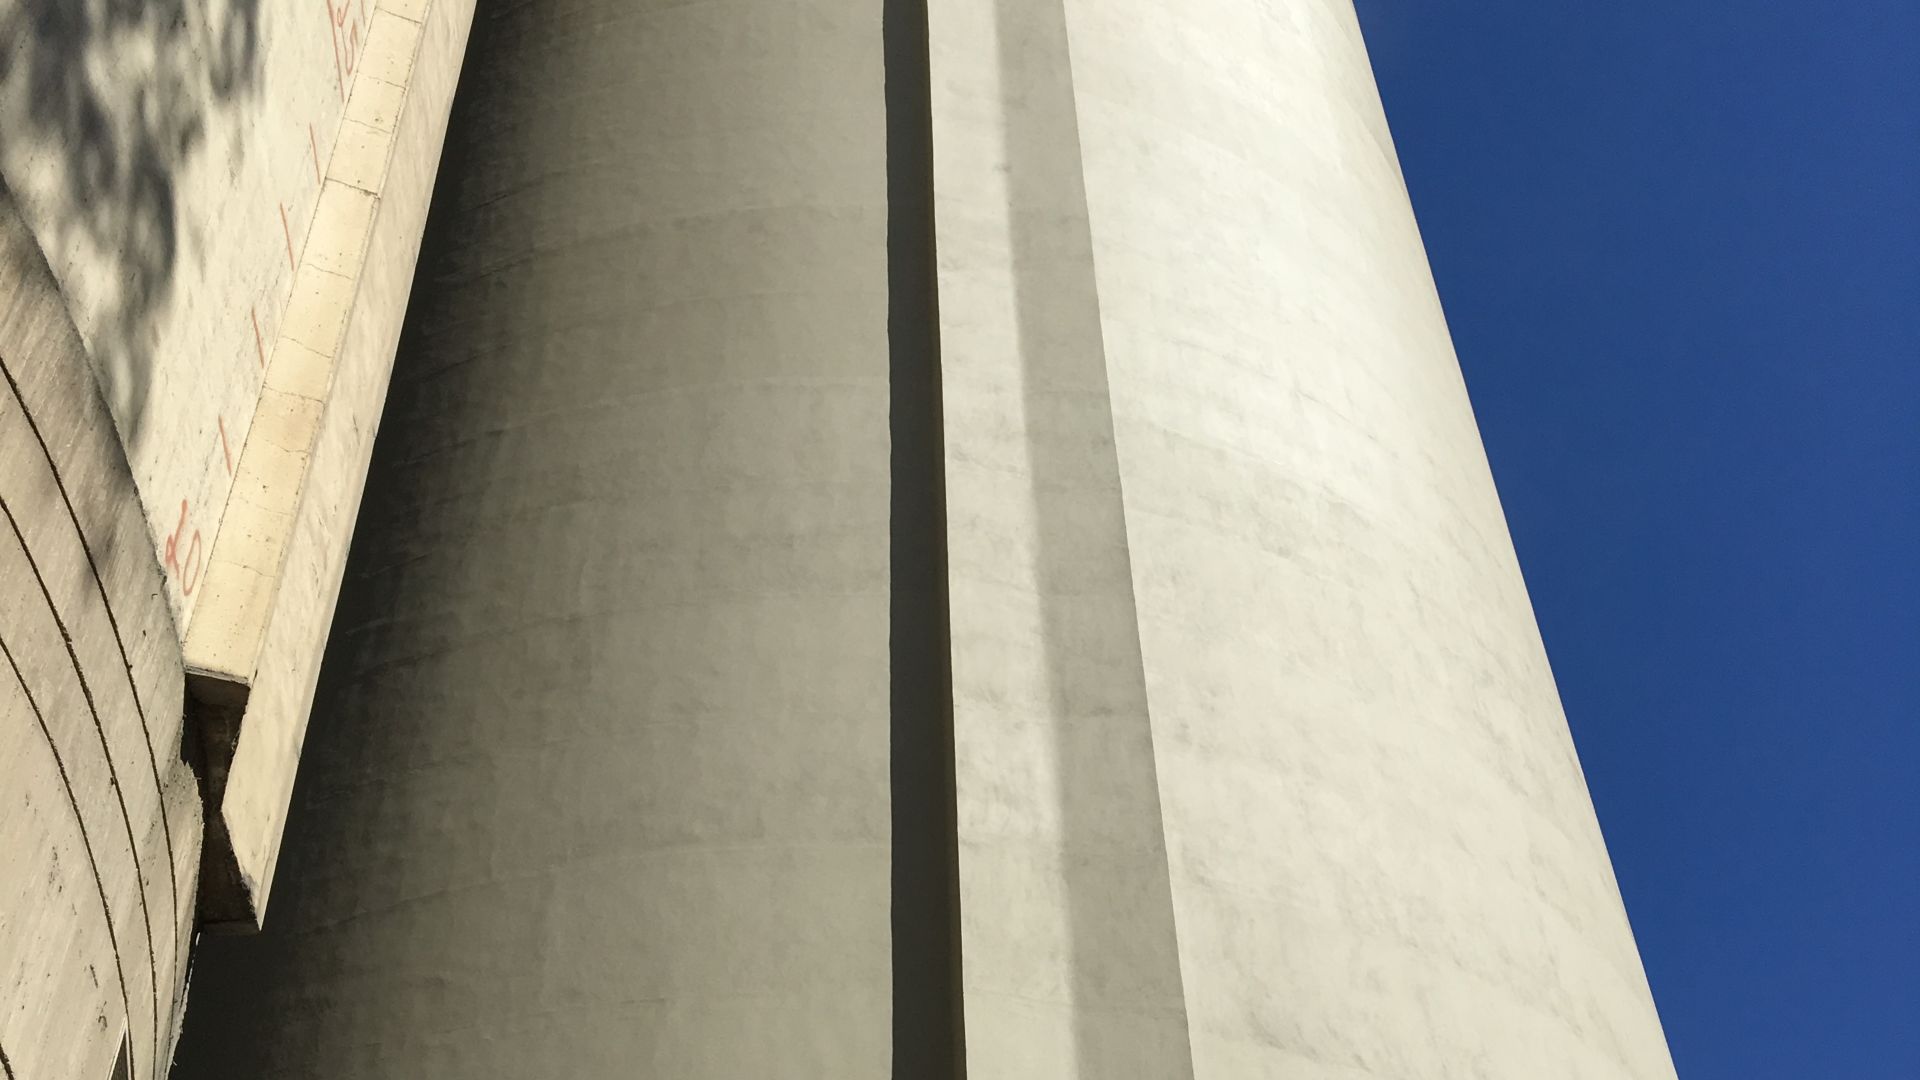 Concrete silo after concrete repair mortar renovation